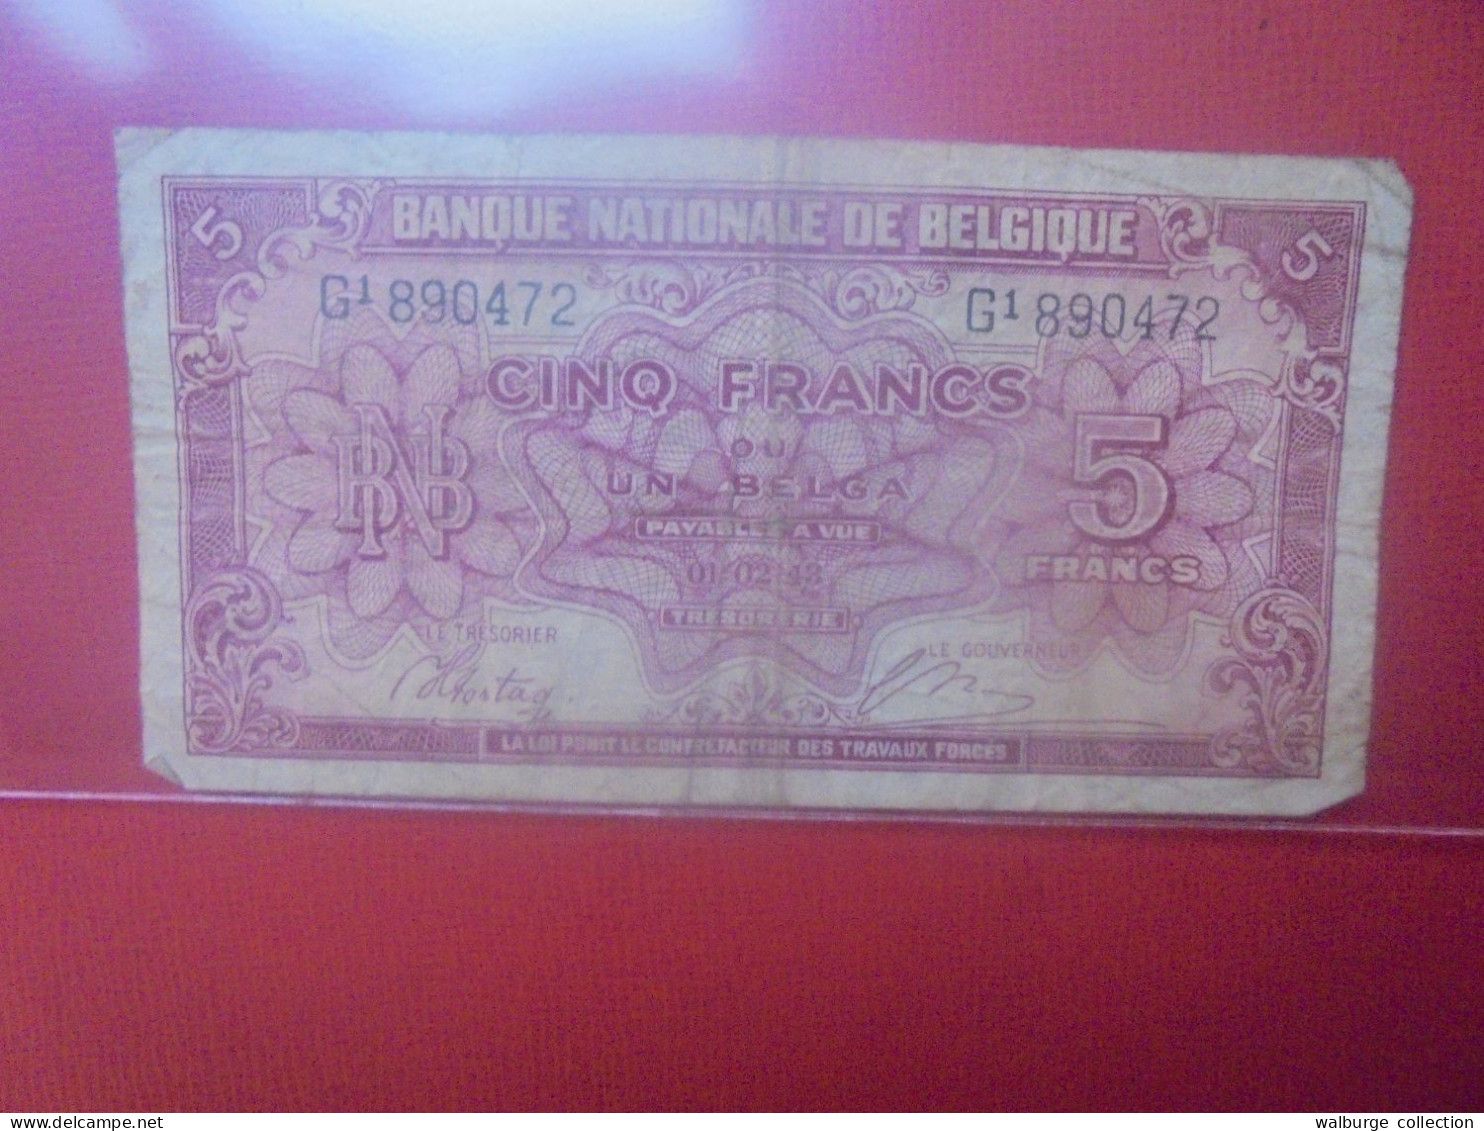 BELGIQUE 5 FRANCS 1943 Circuler (B.32) - 5 Francs-1 Belga